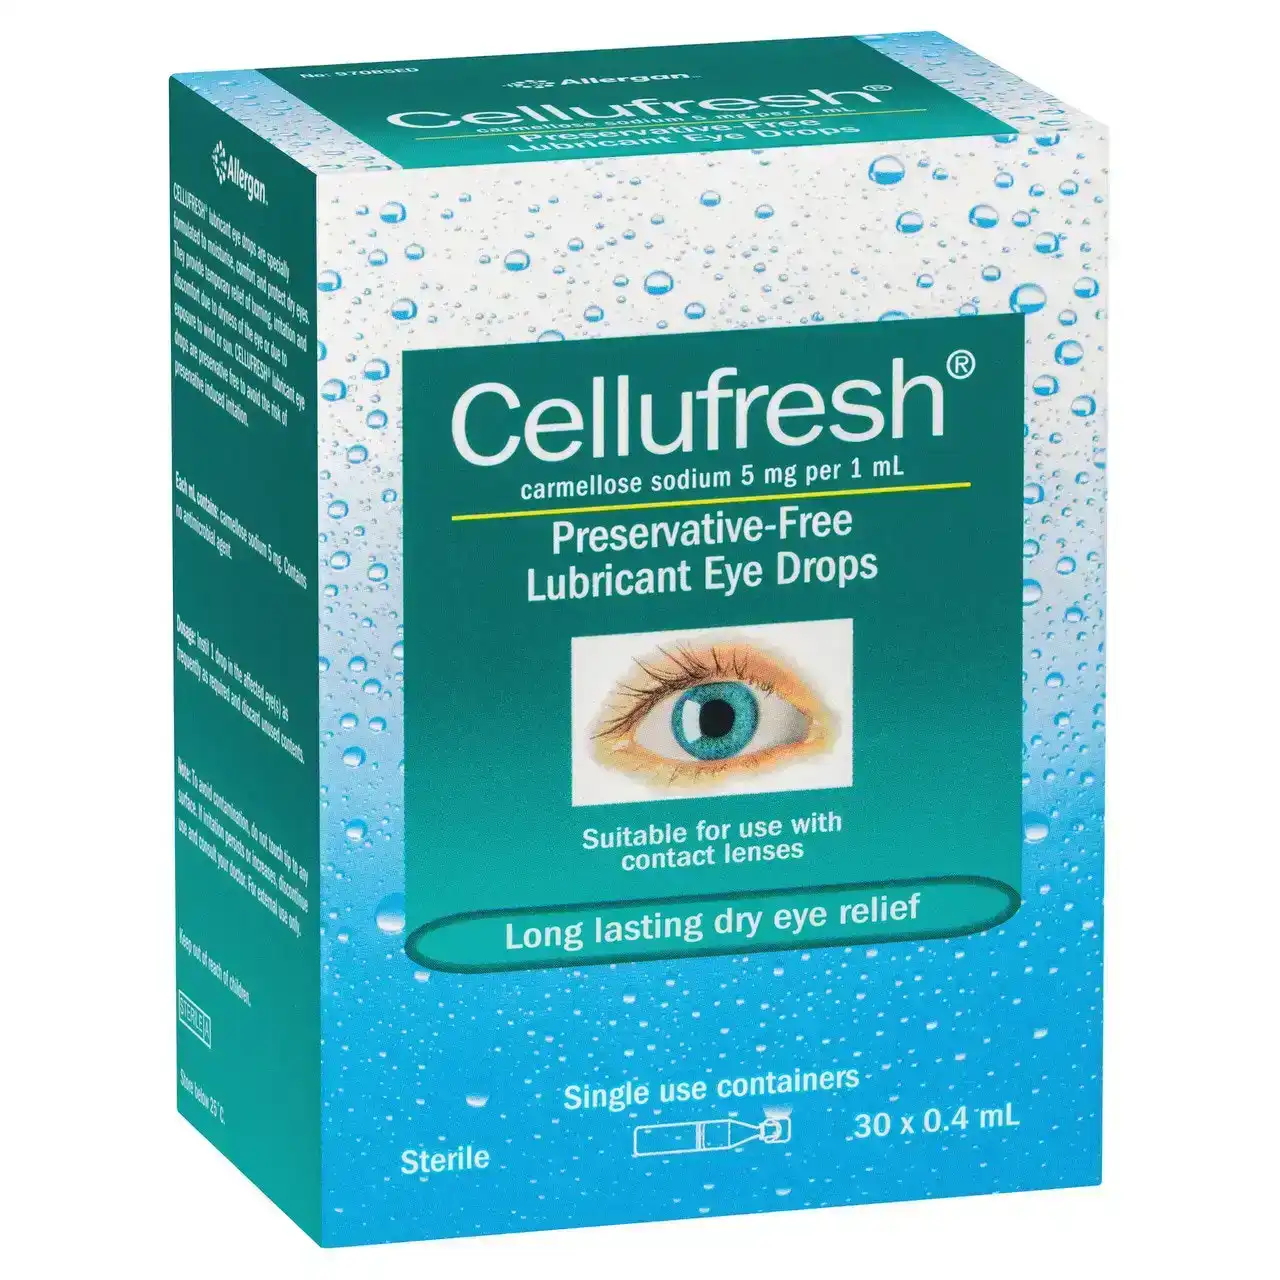 CELLUFRESH Lubricant Eye Drops 30 x 0.4mL